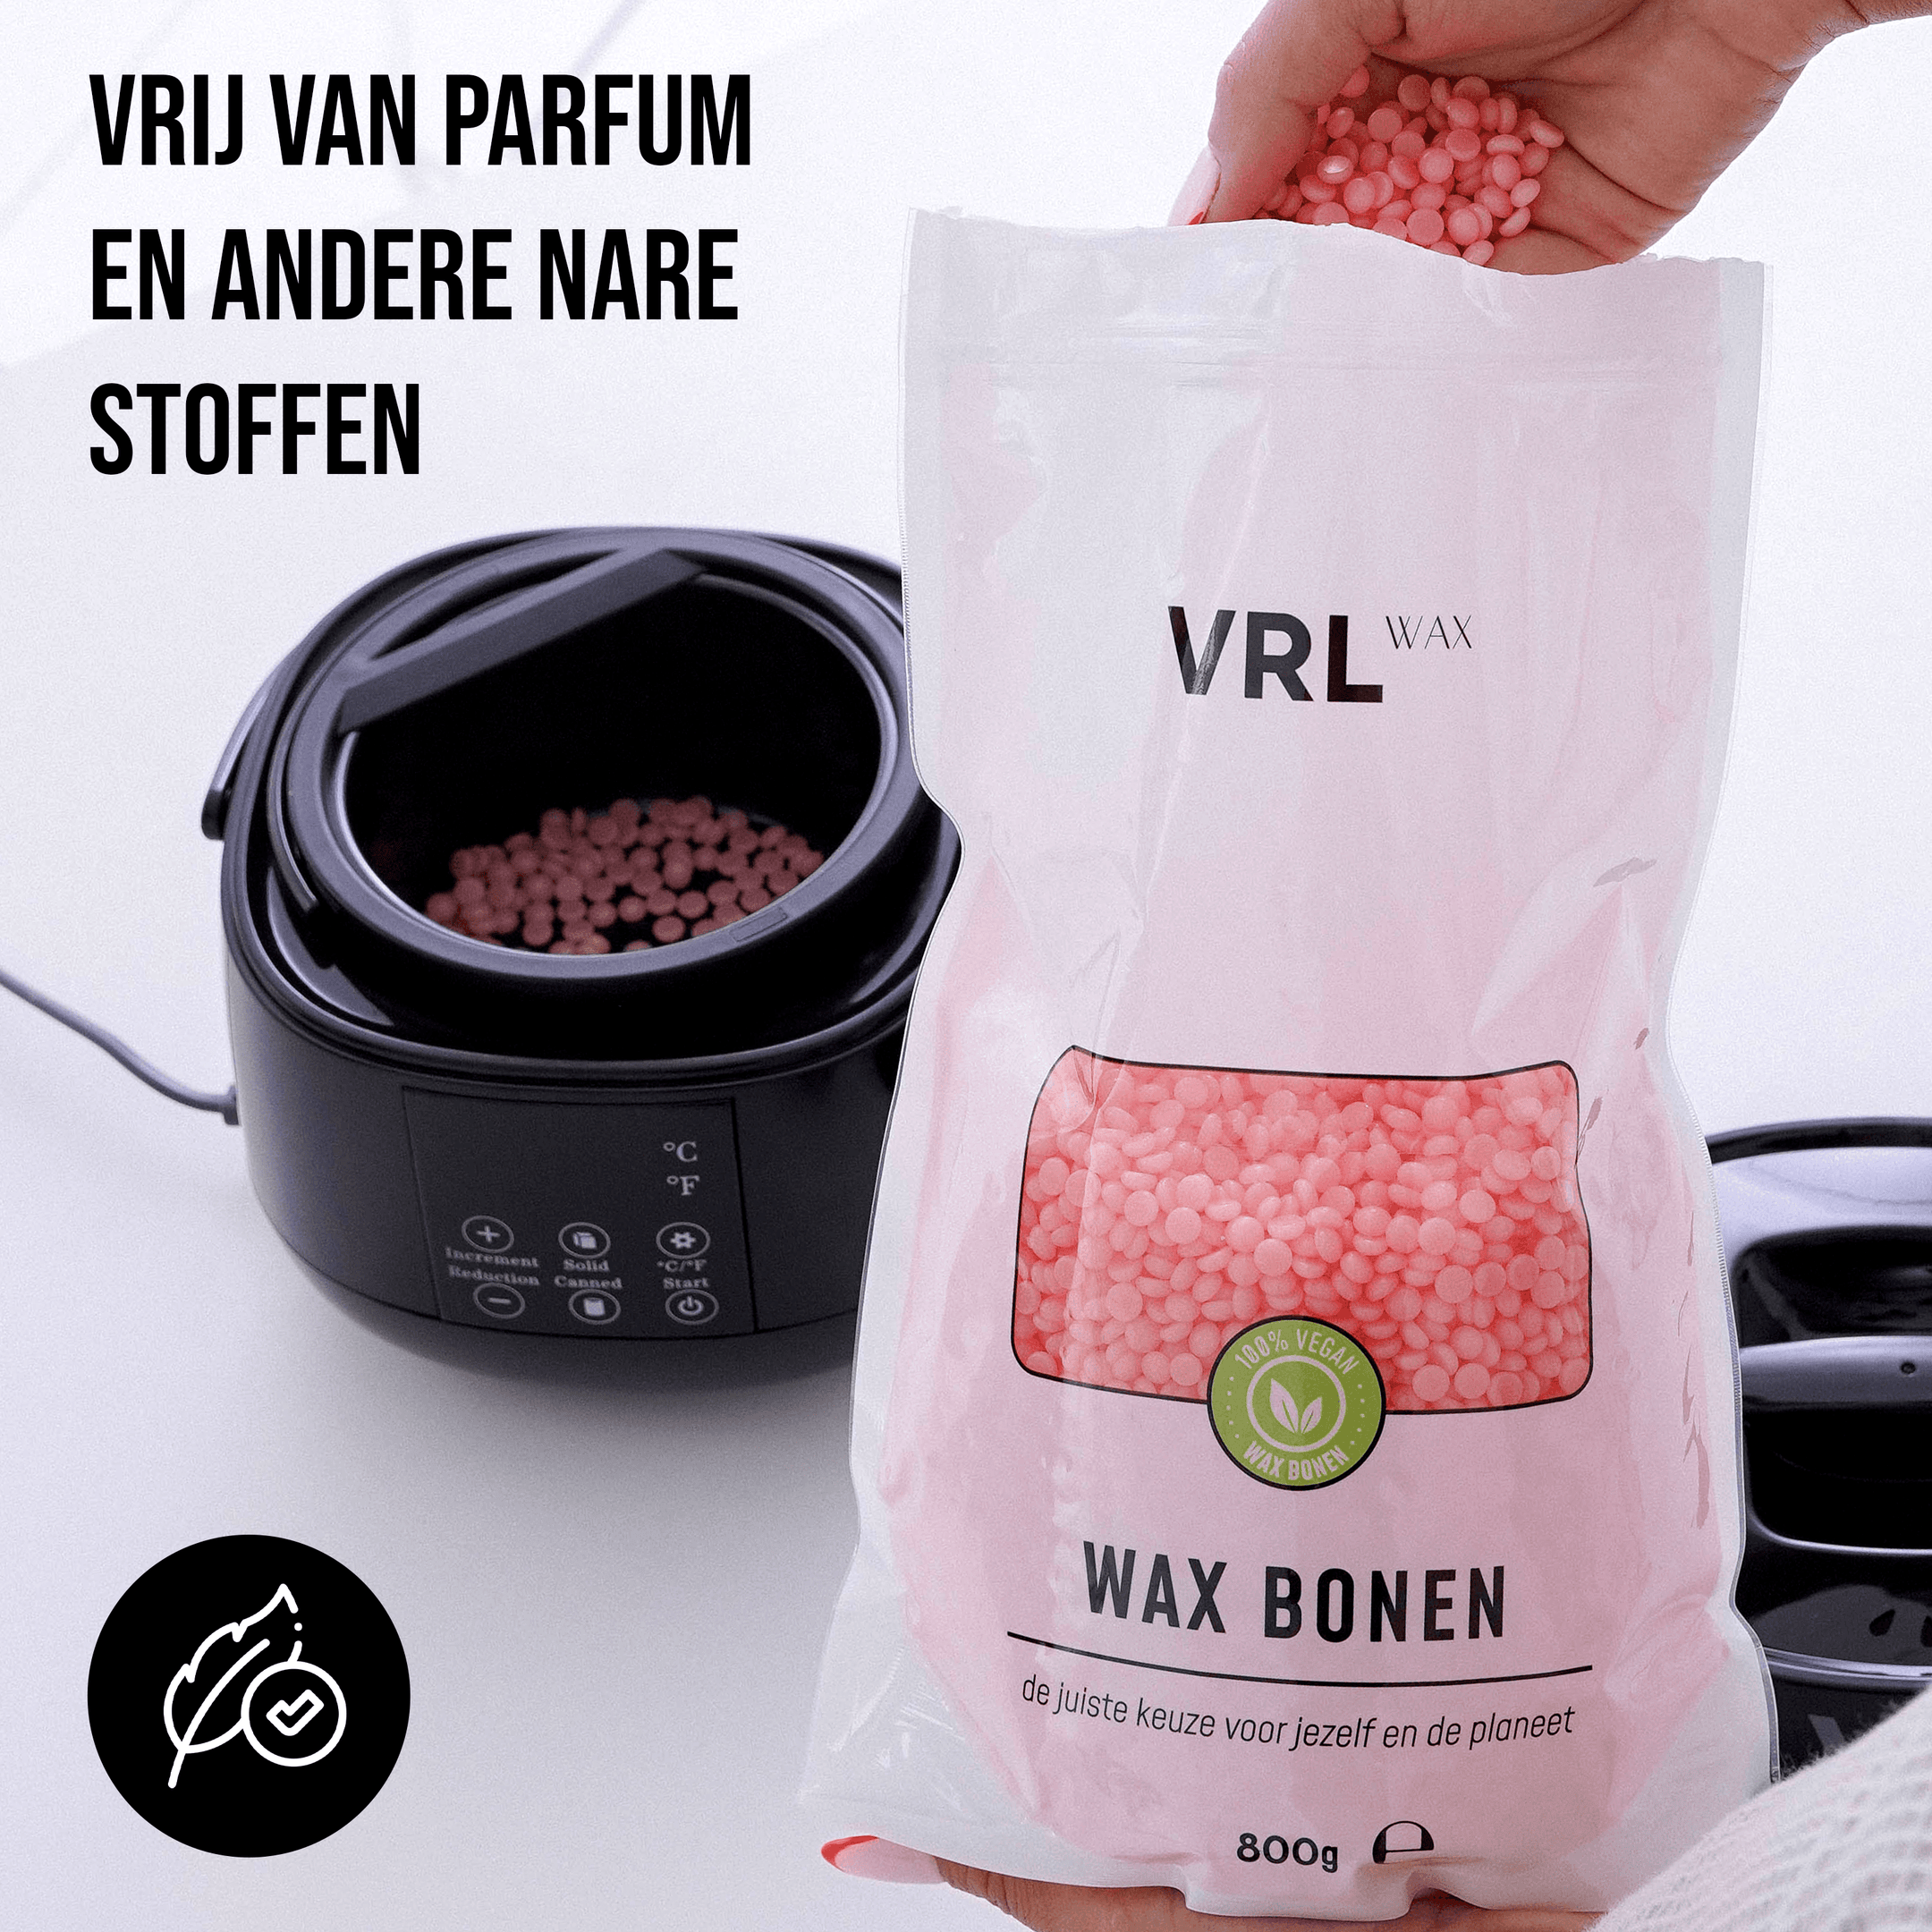 VRL Wax Bonen - Crystal Orange (800 gram) - VRL WAX